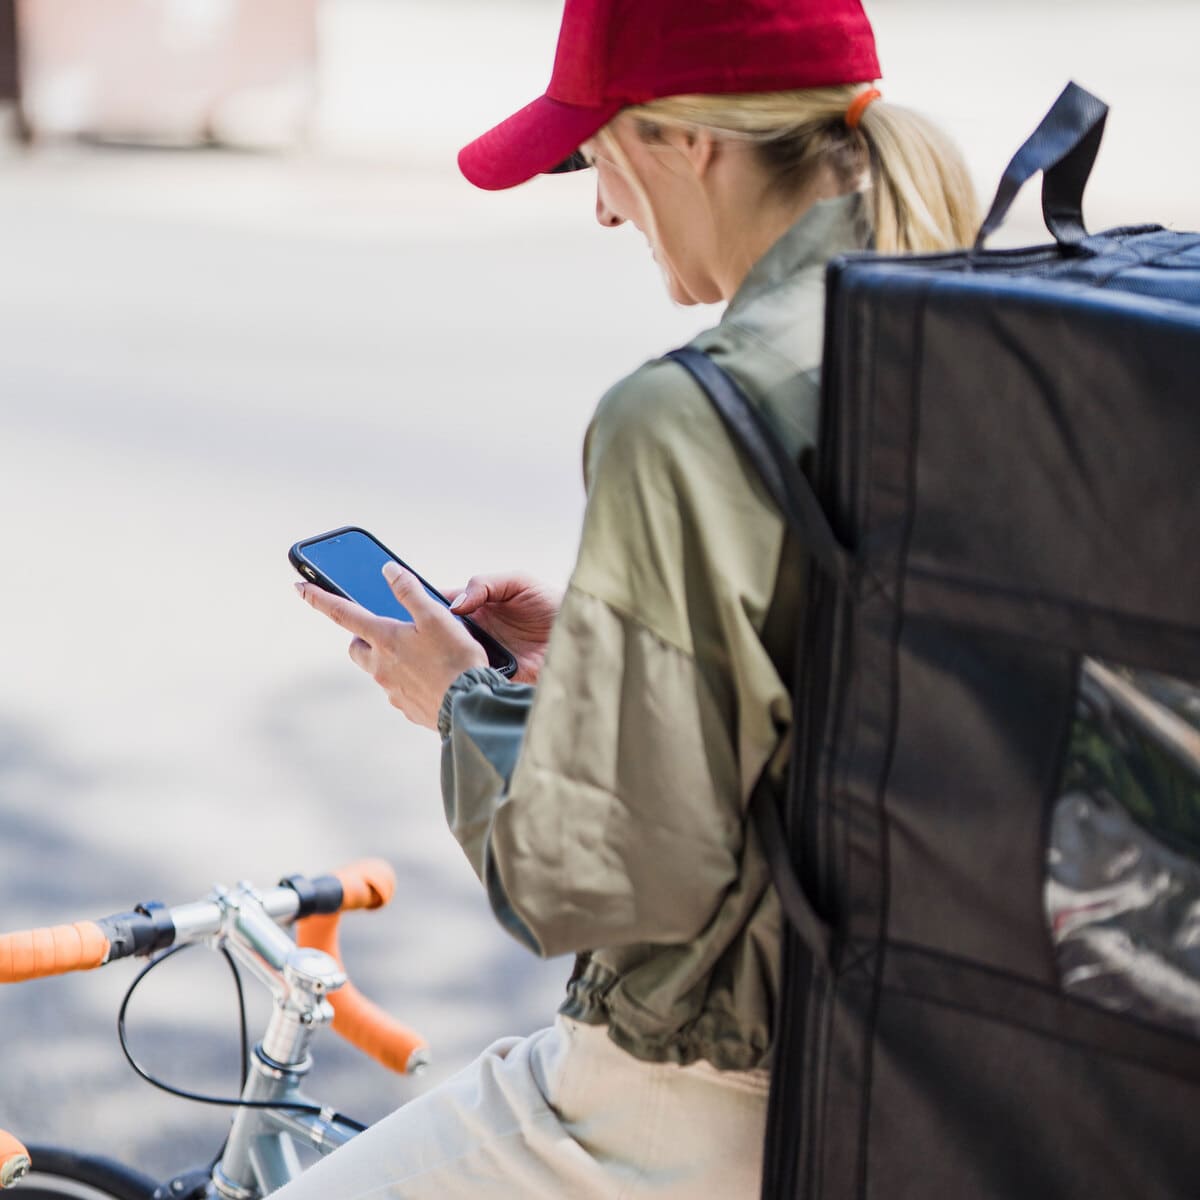 Chica repartidora de comida a domicilio subida en la bici y comprobando la dirección de reparto en su smartphone